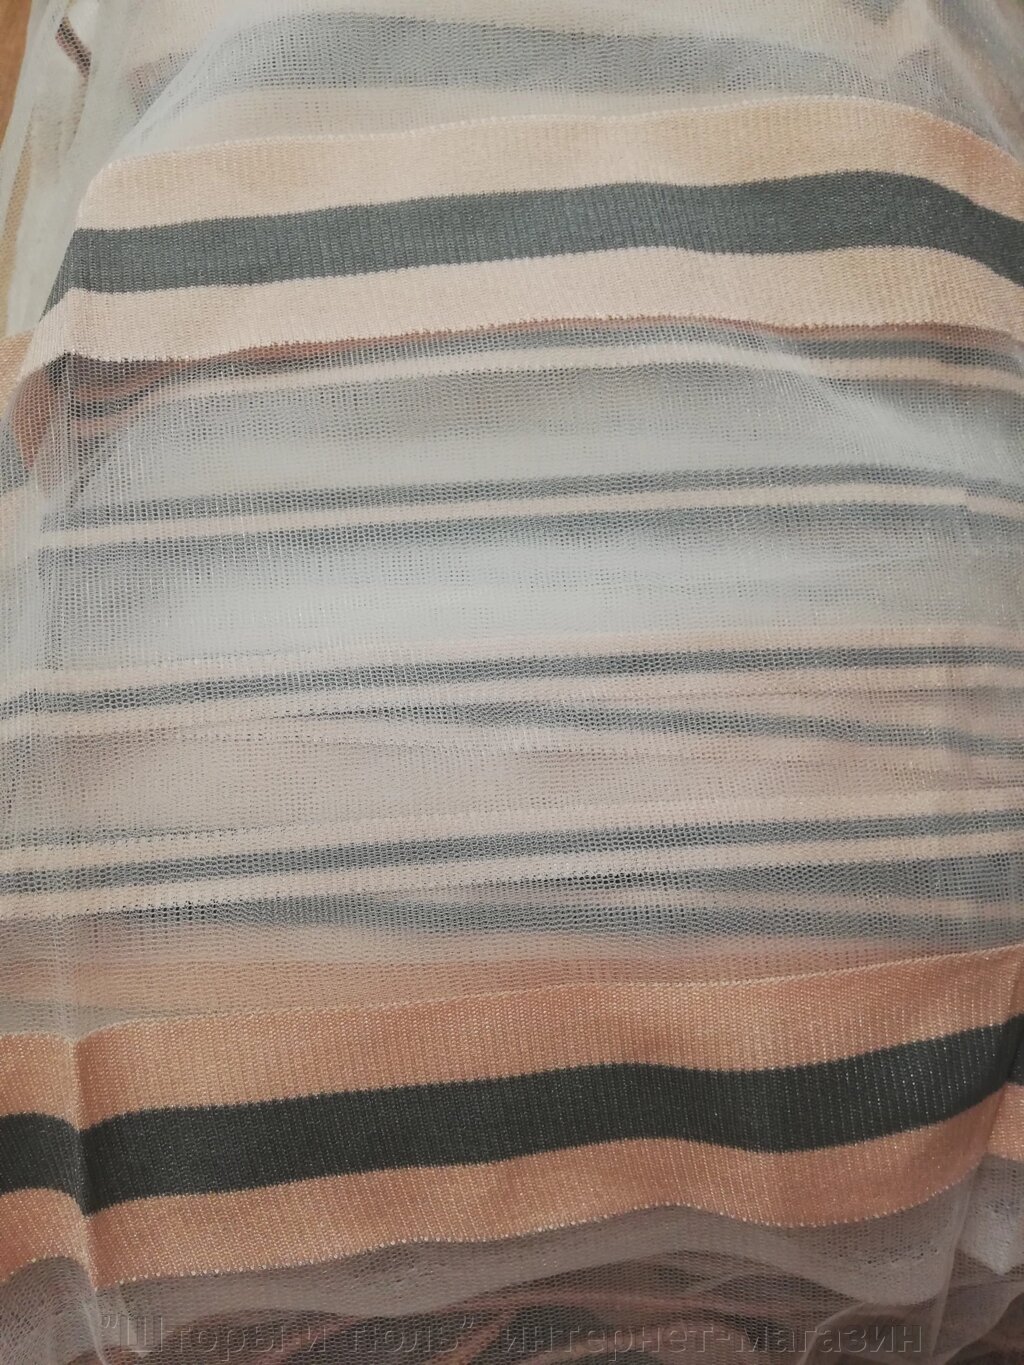 Тюль полоска цвета пудра с сірим коліром, залишок 3,6 м від компанії "Штори і тюль" інтернет-магазин - фото 1